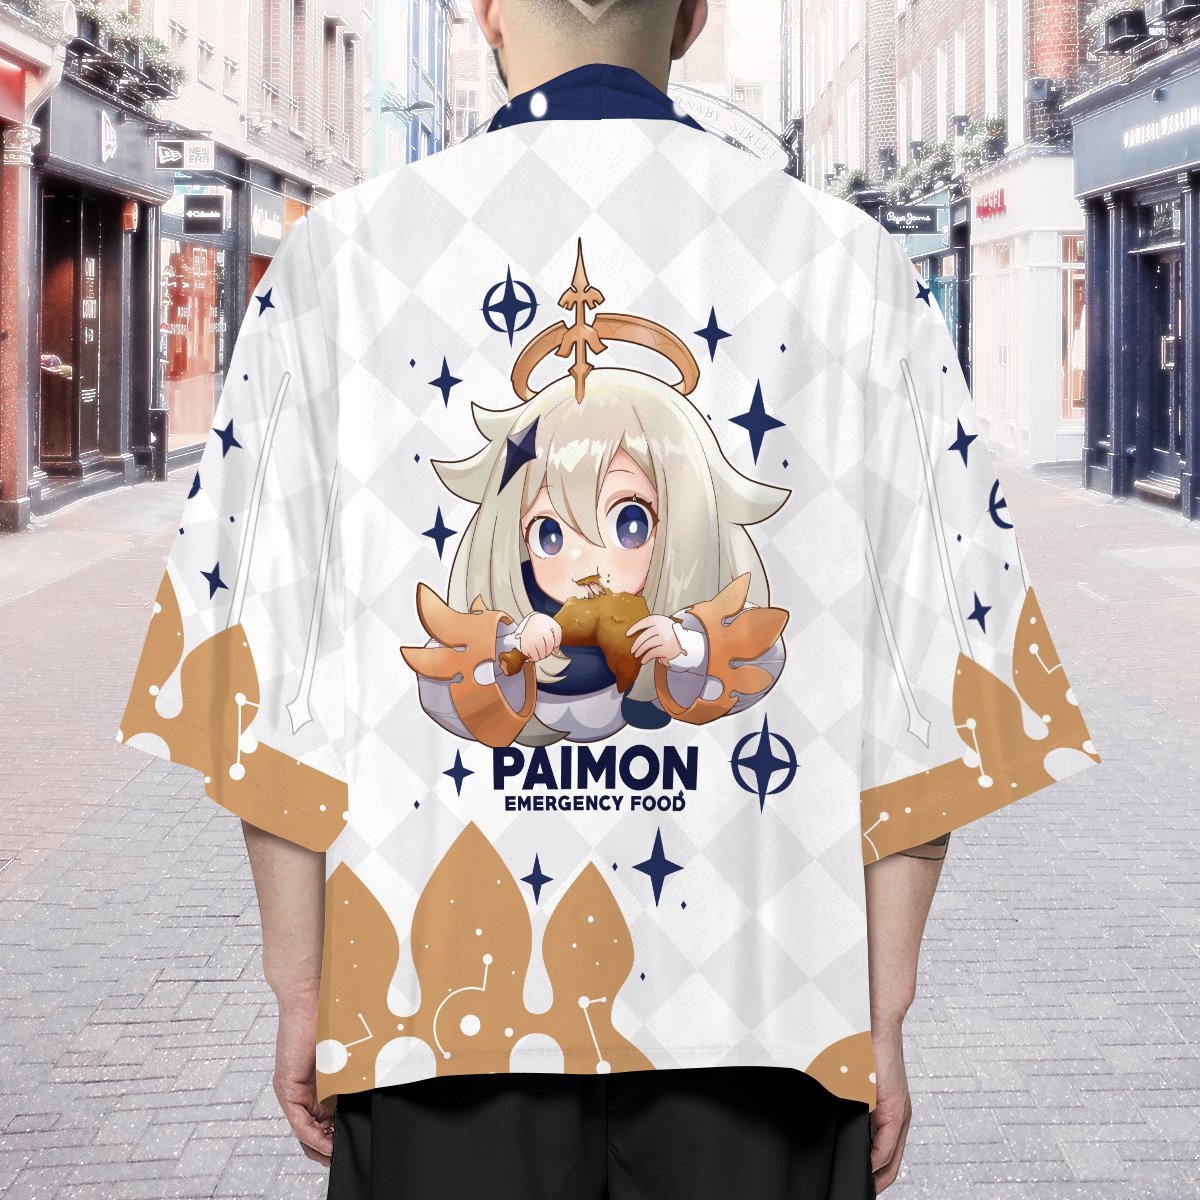 paimon kimono 677374 - Otaku Treat